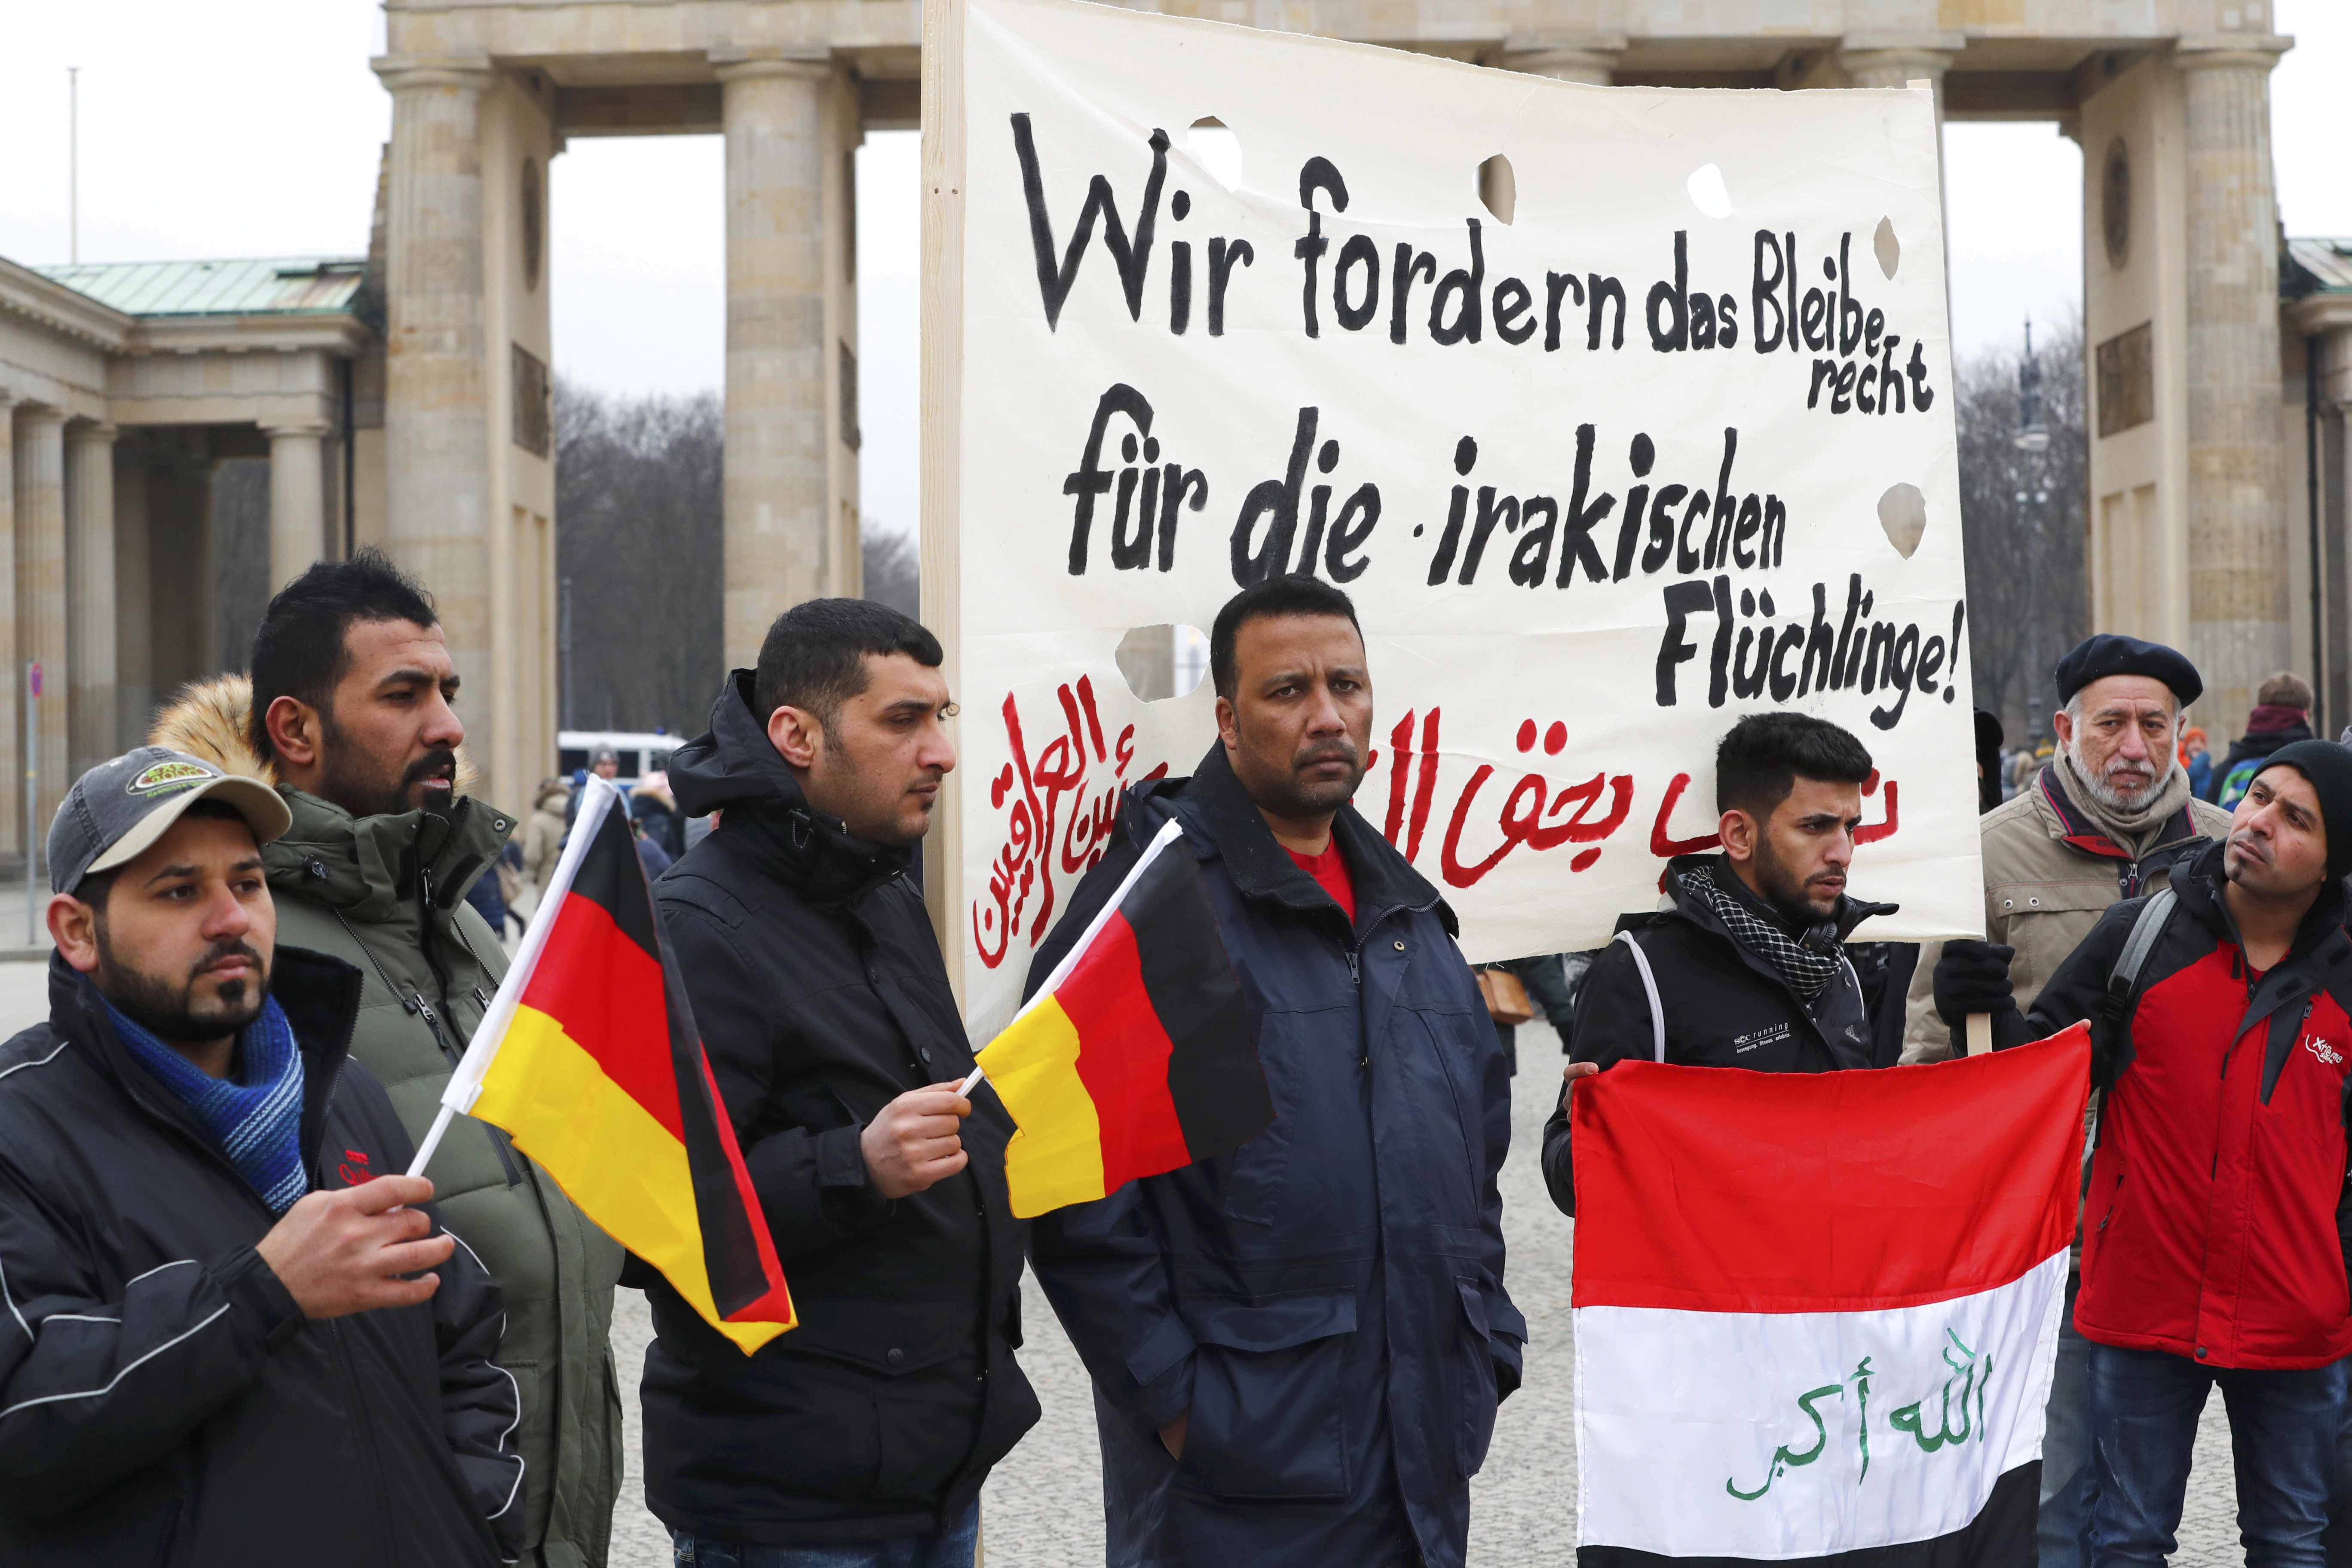 عراقيون يتظاهرون فى ألمانيا لرفض قرار الحكومة بترحيلهم لبلدهم